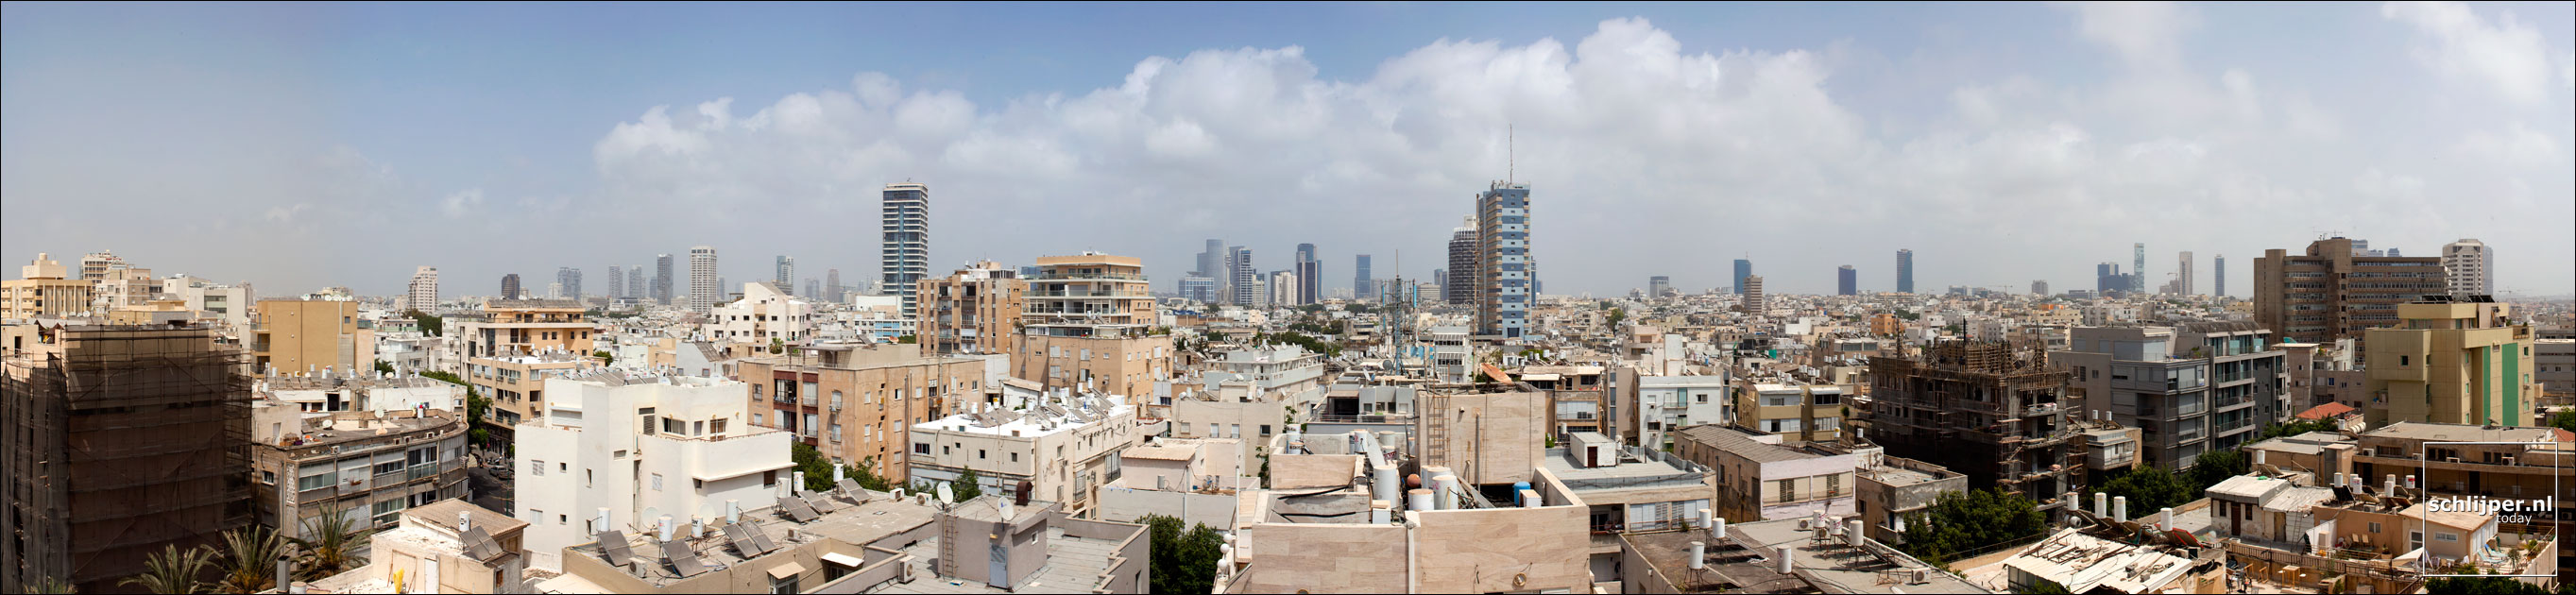 Israel, Tel Aviv, 23 mei 2012